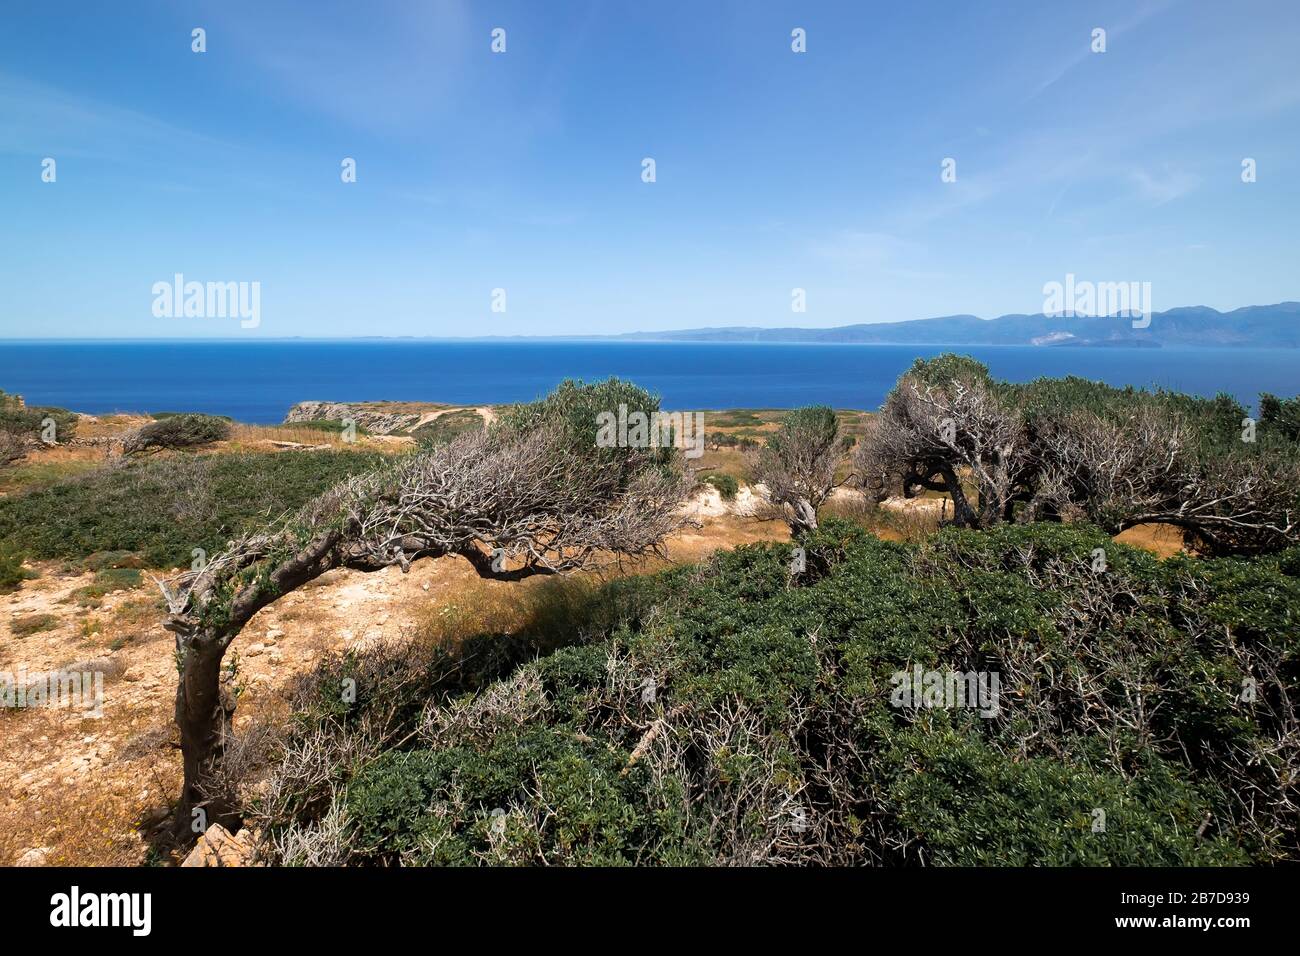 Incredibile vista del vecchio ulivo sulla collina rocciosa, l'isola di Creta. Grecia. Tronco ritorto sotto soffiare il vento mediterraneo del mar Egeo. Paesaggio naturale An Foto Stock